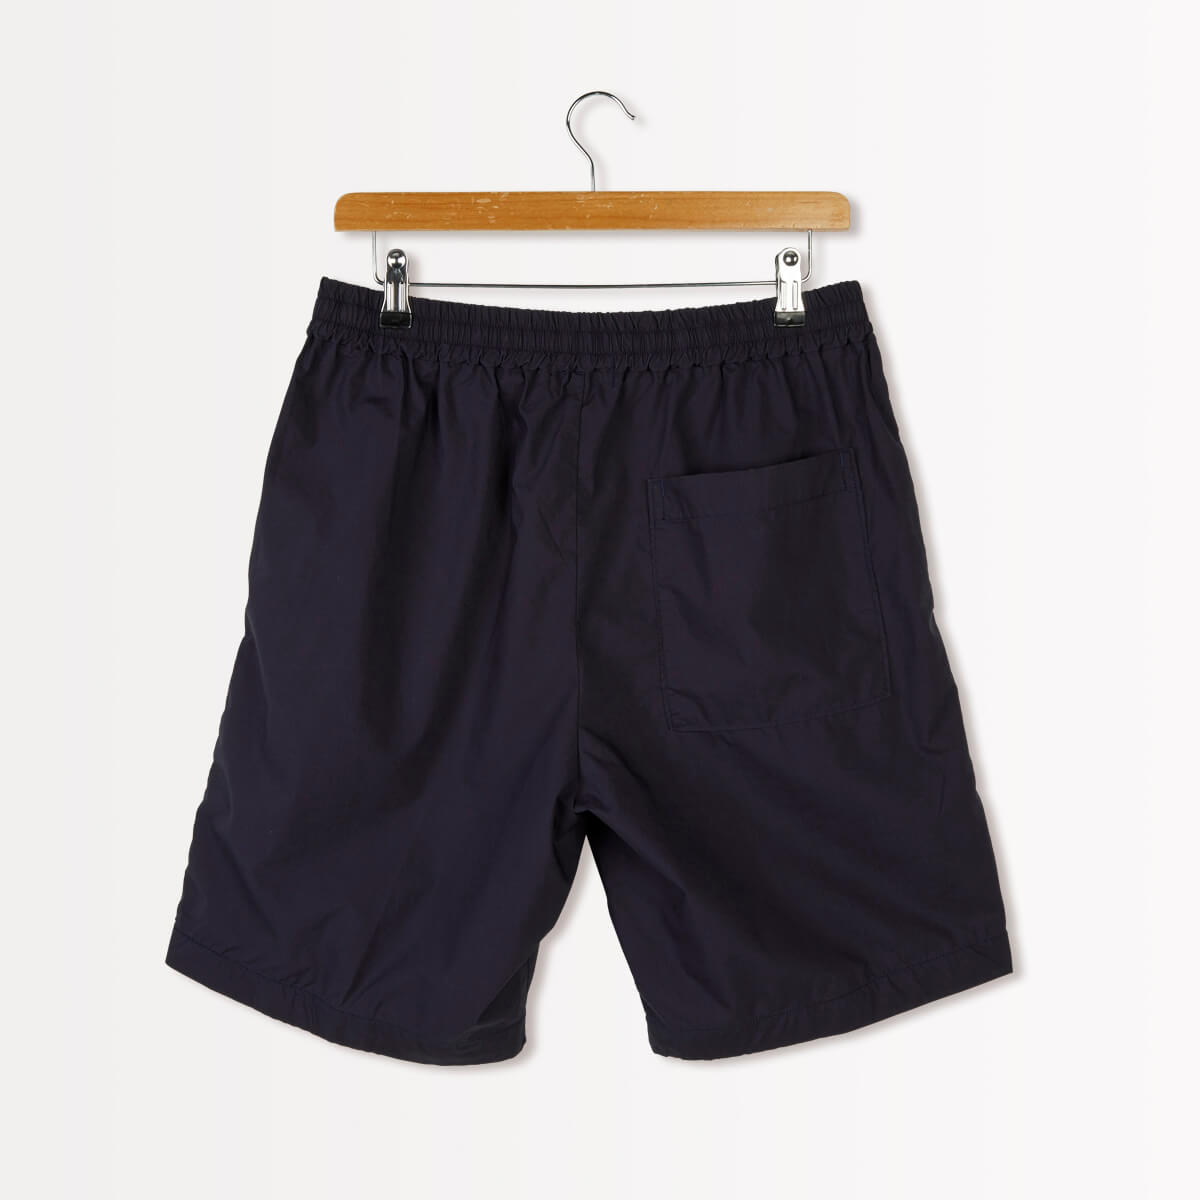 Sloane Shorts - Navy • Gymphlex • Beautiful, practical clothing Made ...